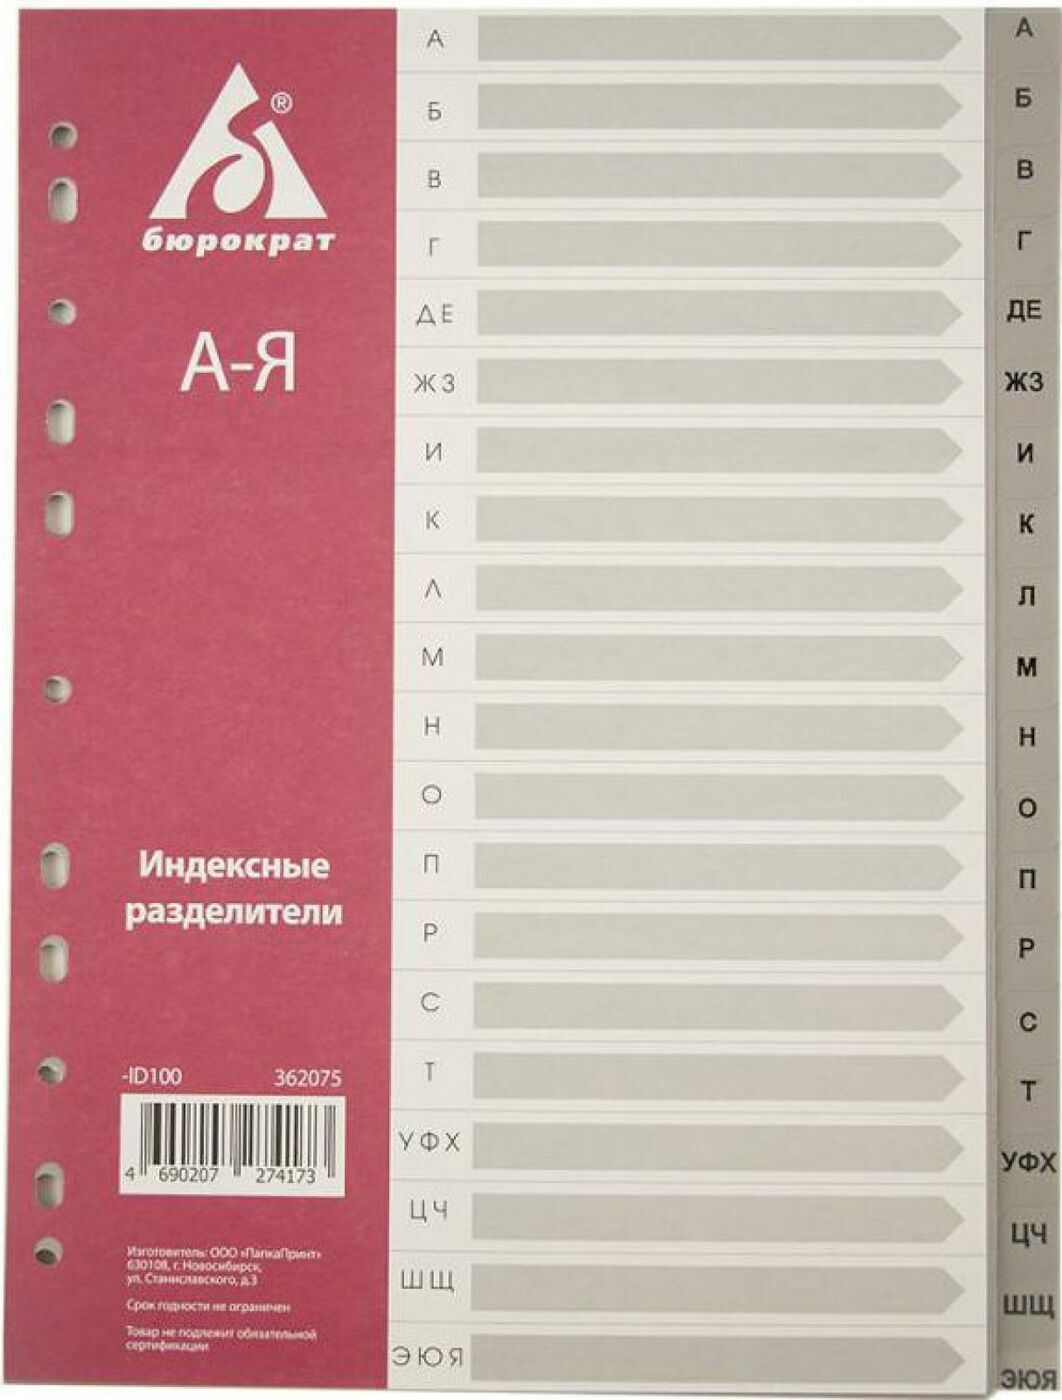 Разделитель индексный Бюрократ ID100 A4 пластик А-Я с бумажным оглавлением серые разделы -